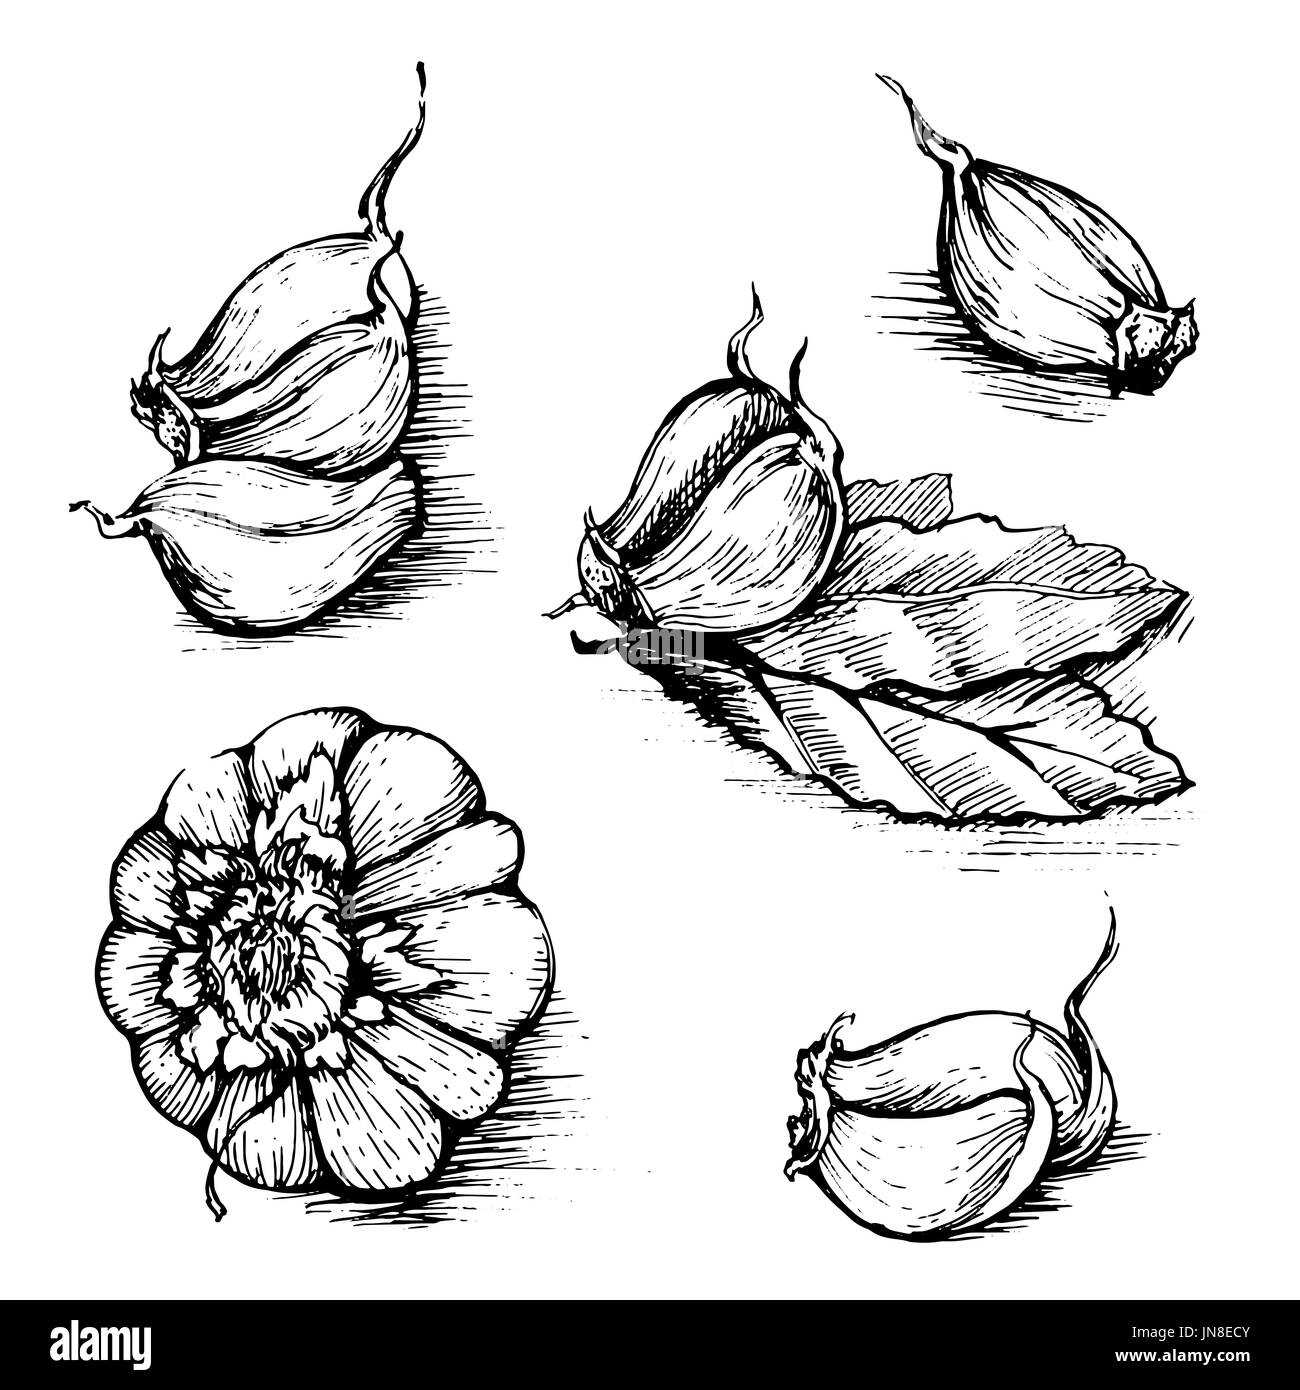 Disegnata a mano insieme di aglio con foglie di alloro. Erbe e spezie schizzo illustrazione isolati su sfondo bianco. Foto Stock